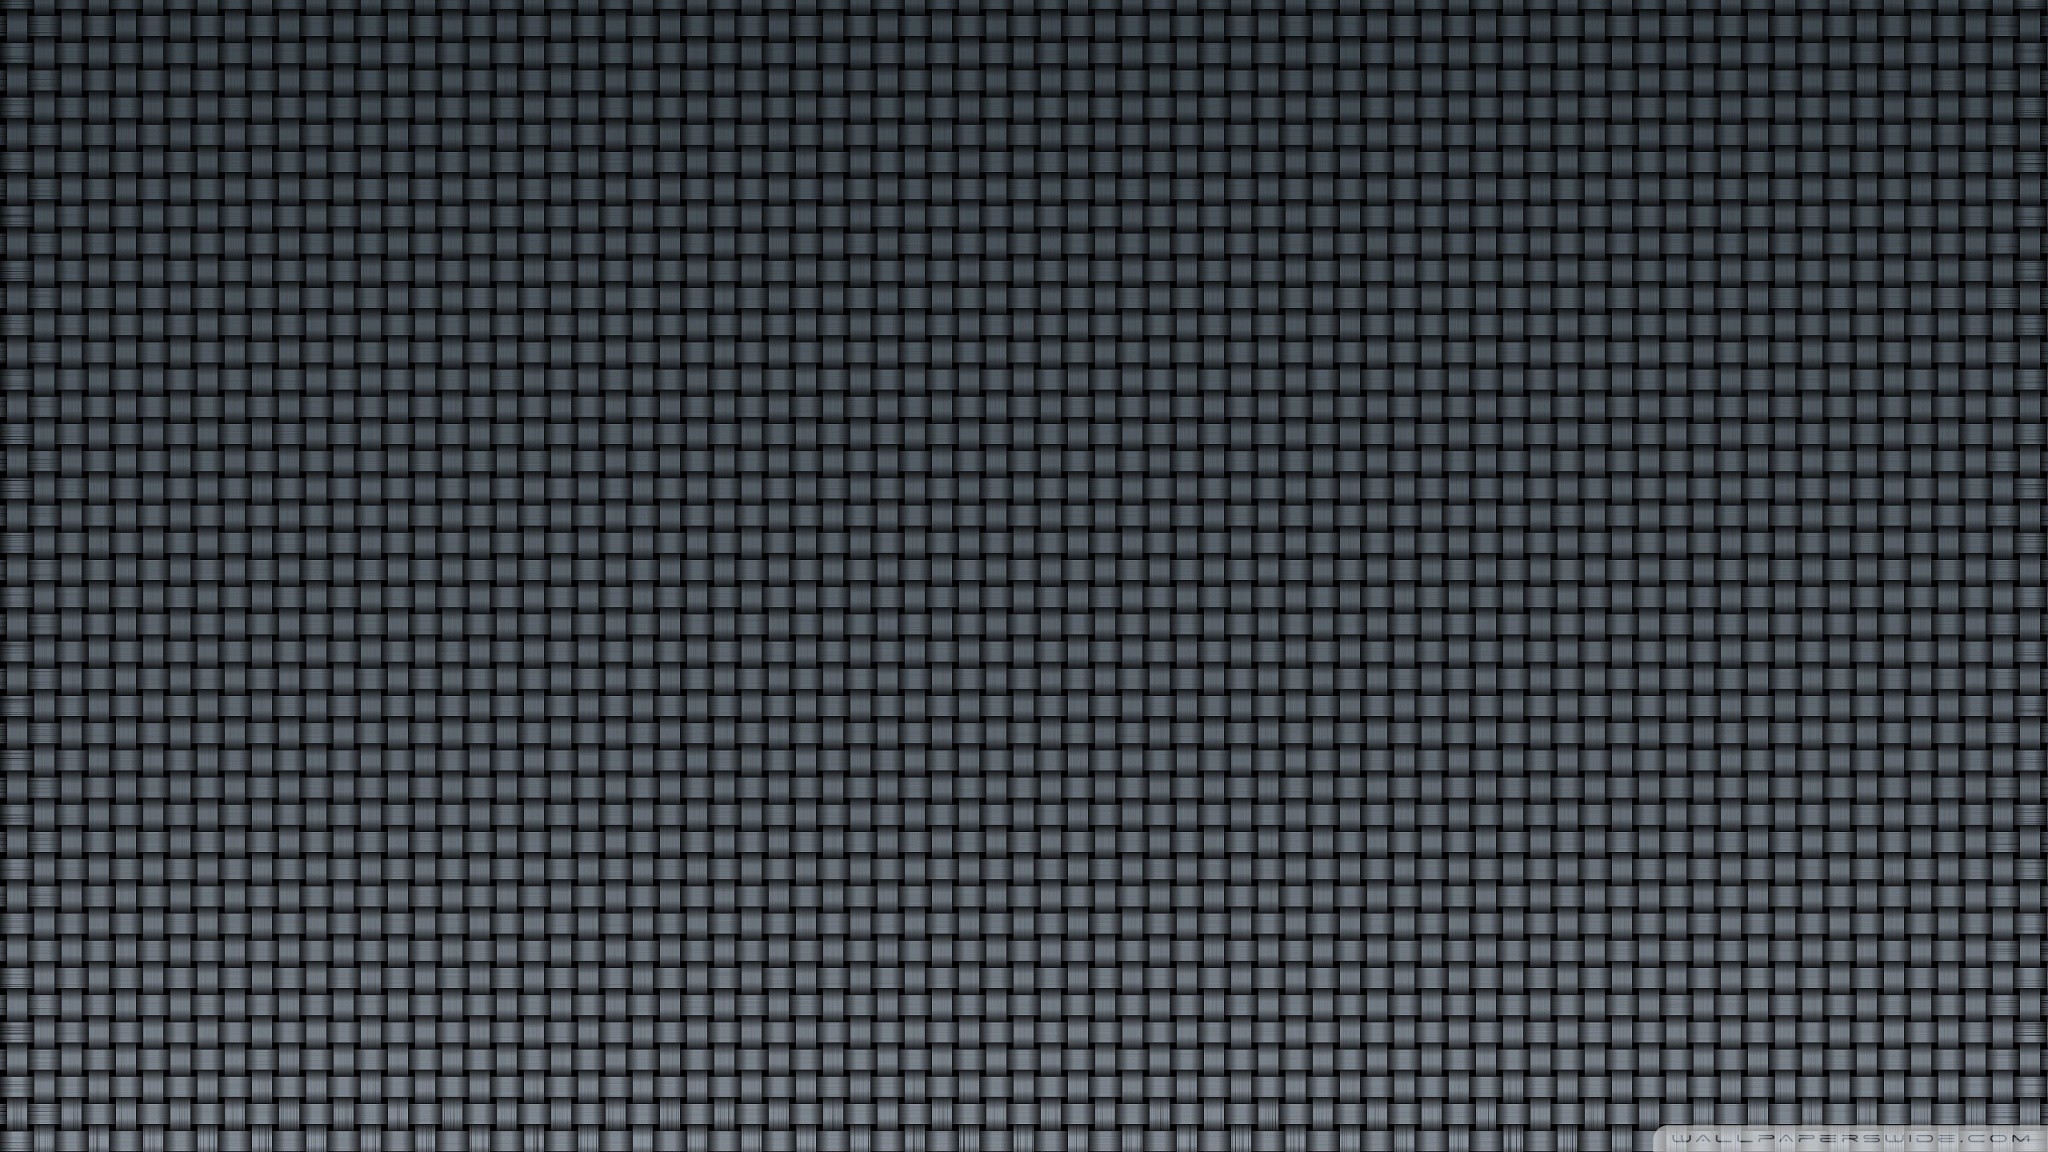 2048x1152 1929x1209 Carbon Fiber Wallpaper Unique Carbon Fiber Wallpapers 4k iPhone  and android Picsbroker